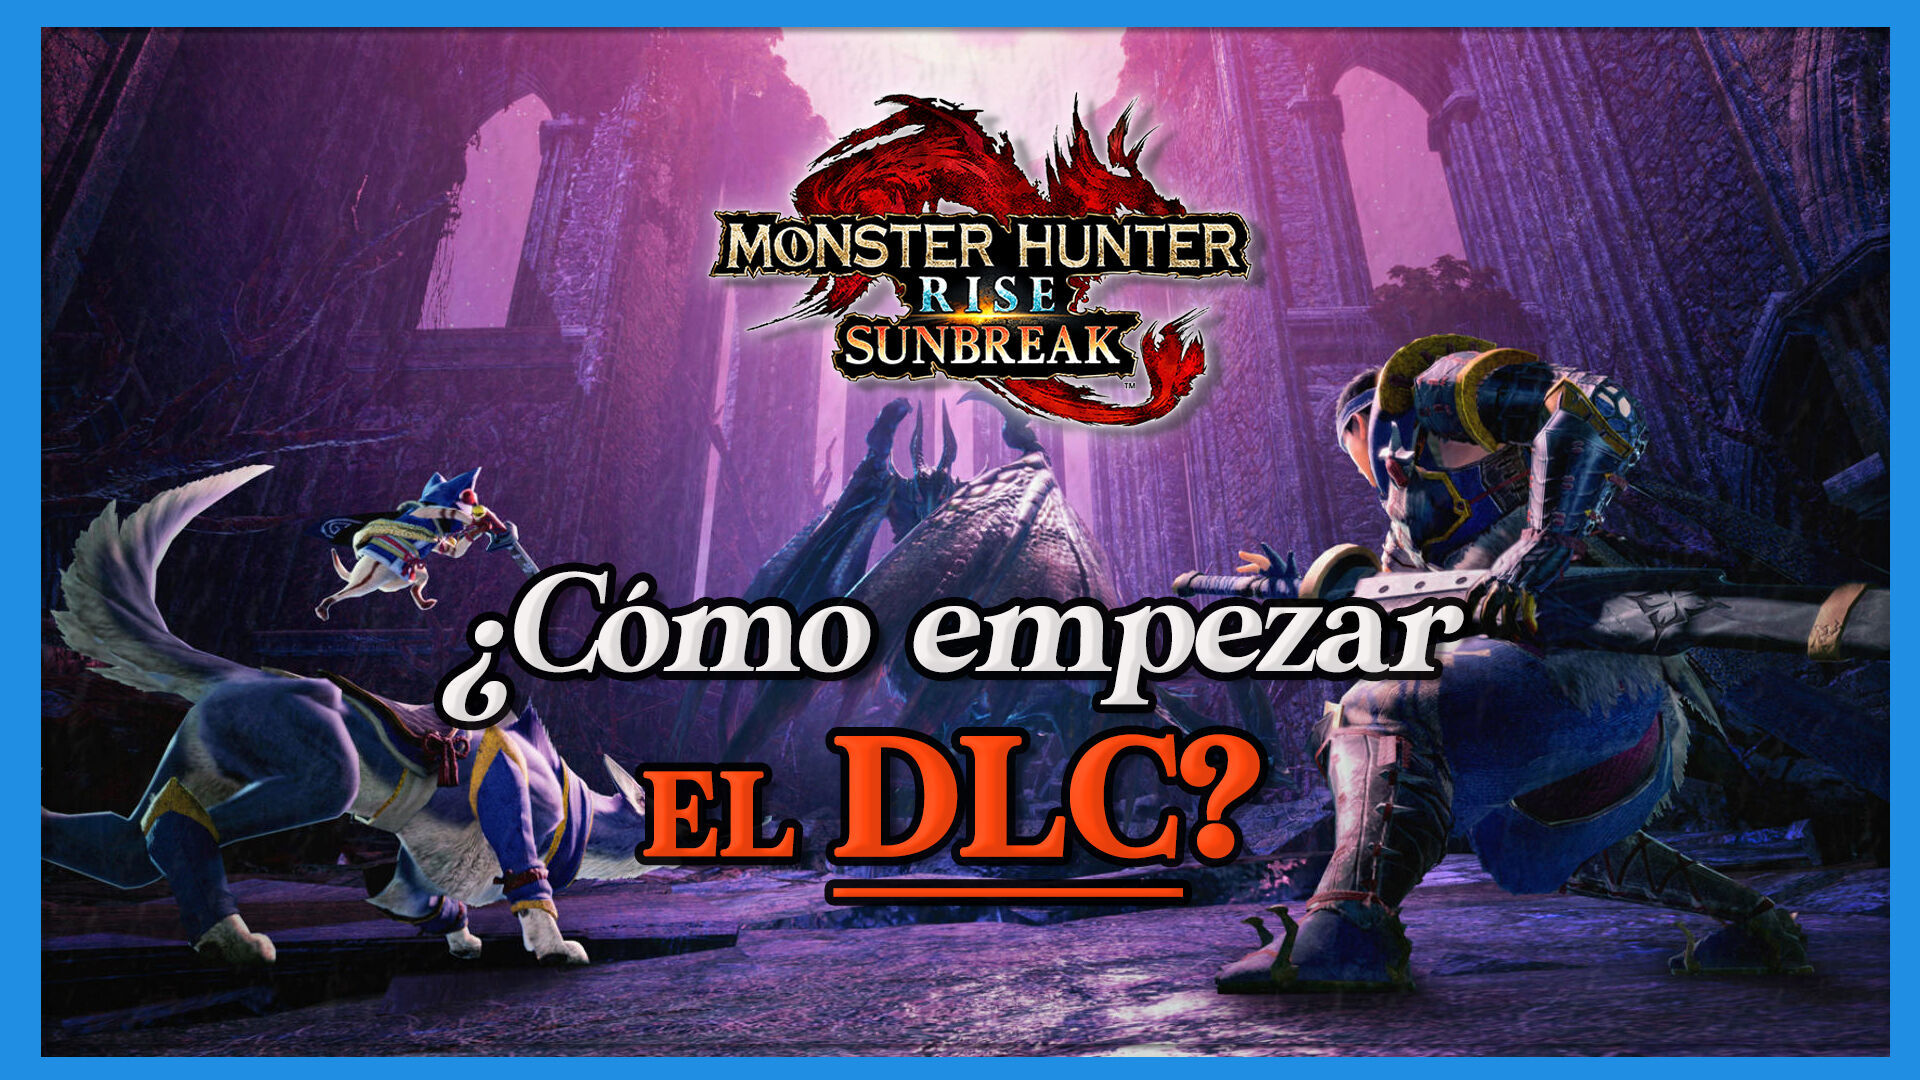 Monster Hunter Rise Sunbreak: ¿Cómo acceder al DLC? Requisitos y pasos